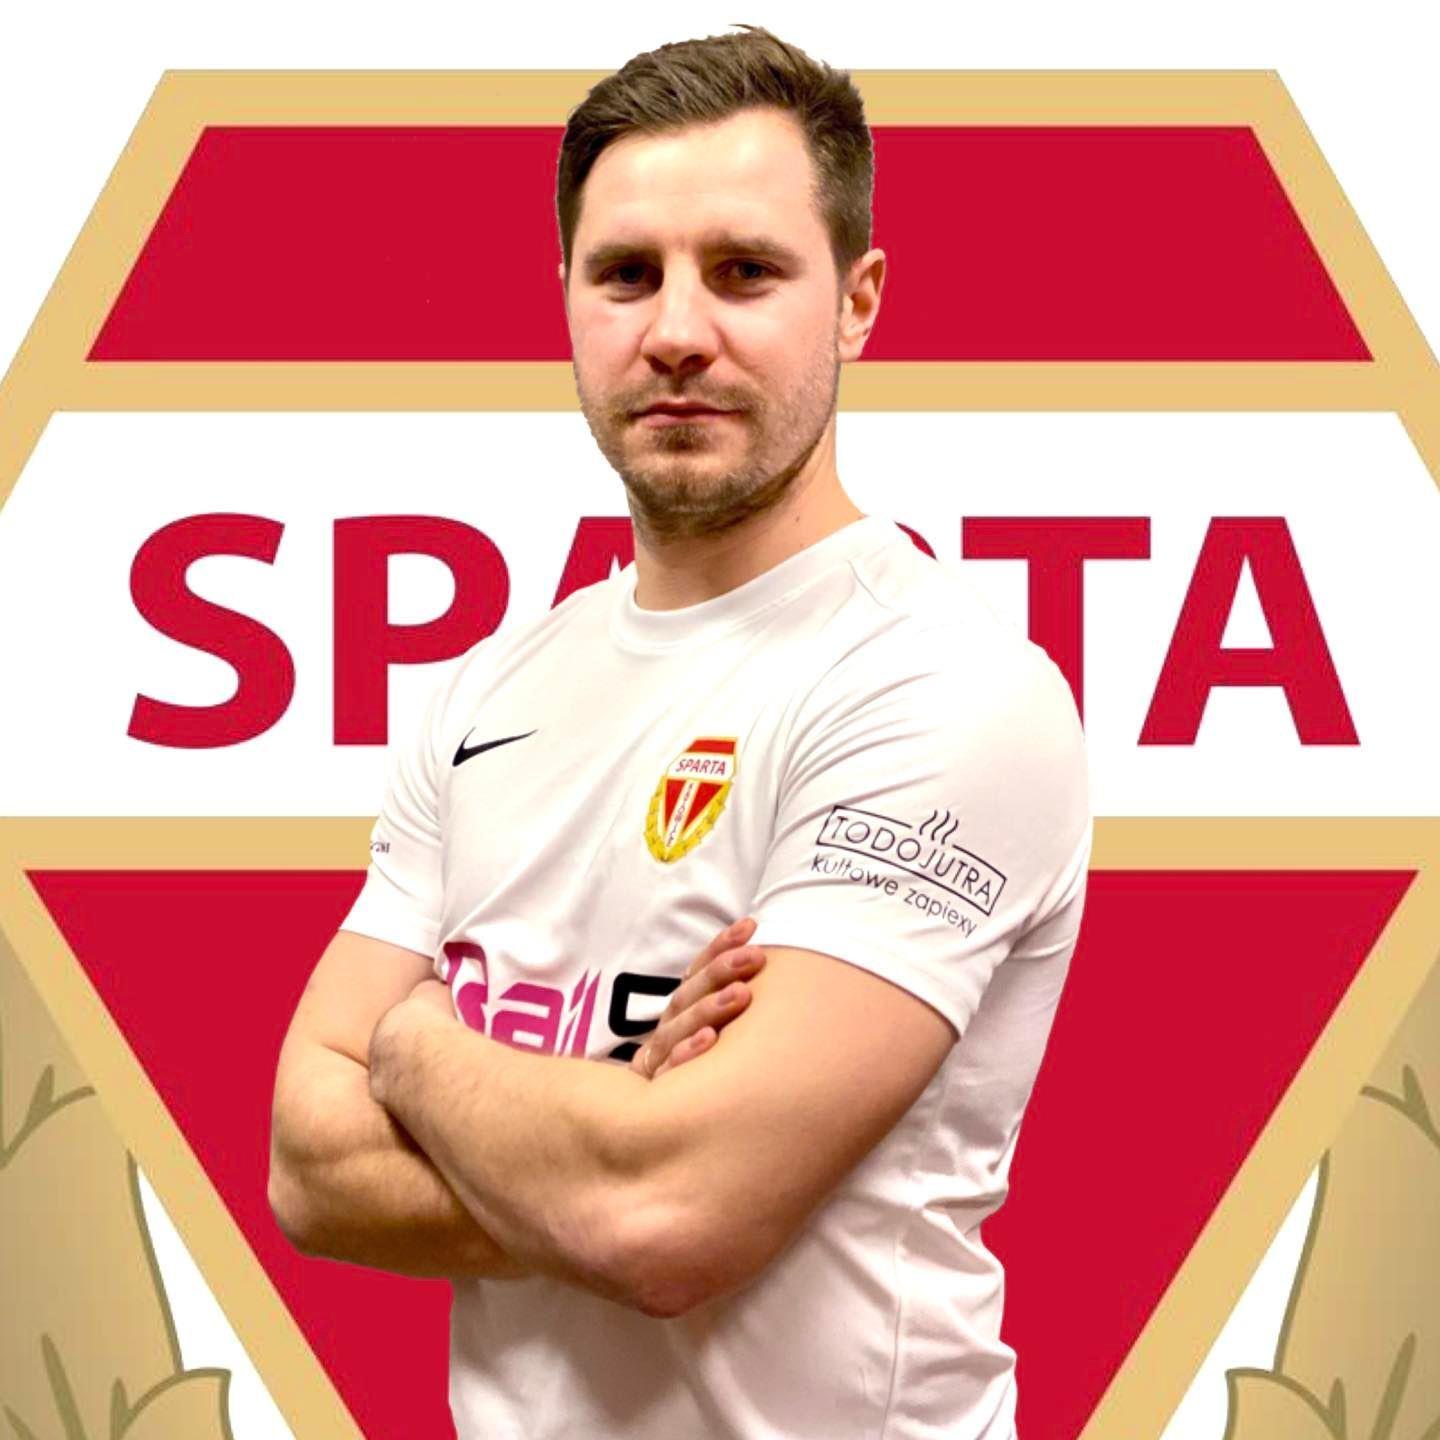 Tomasz Hołota (Sparta Katowice - liga okręgowa)